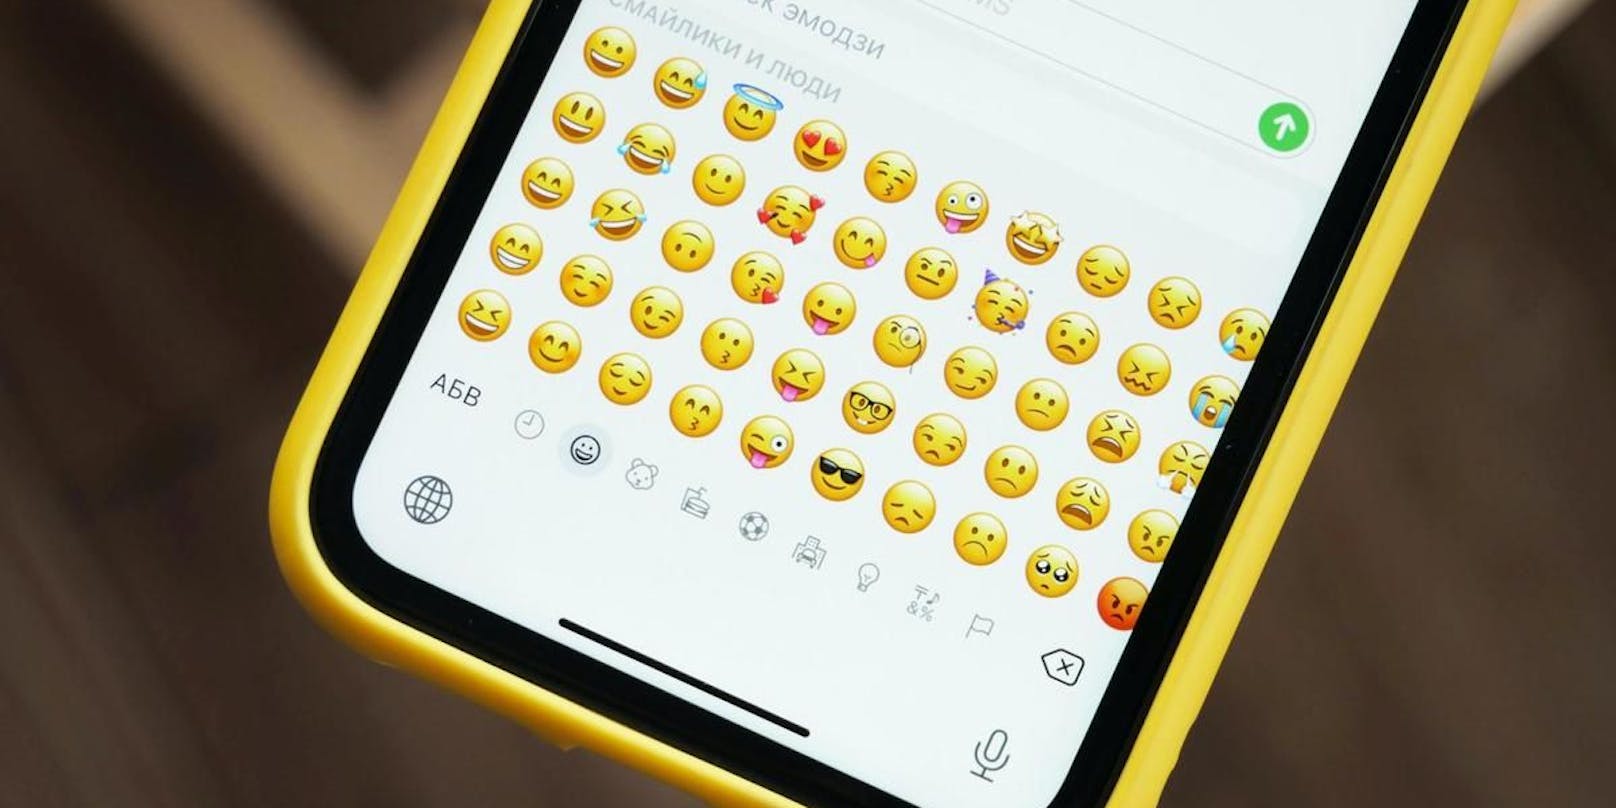 Das iPhone bekommt neue Emojis.